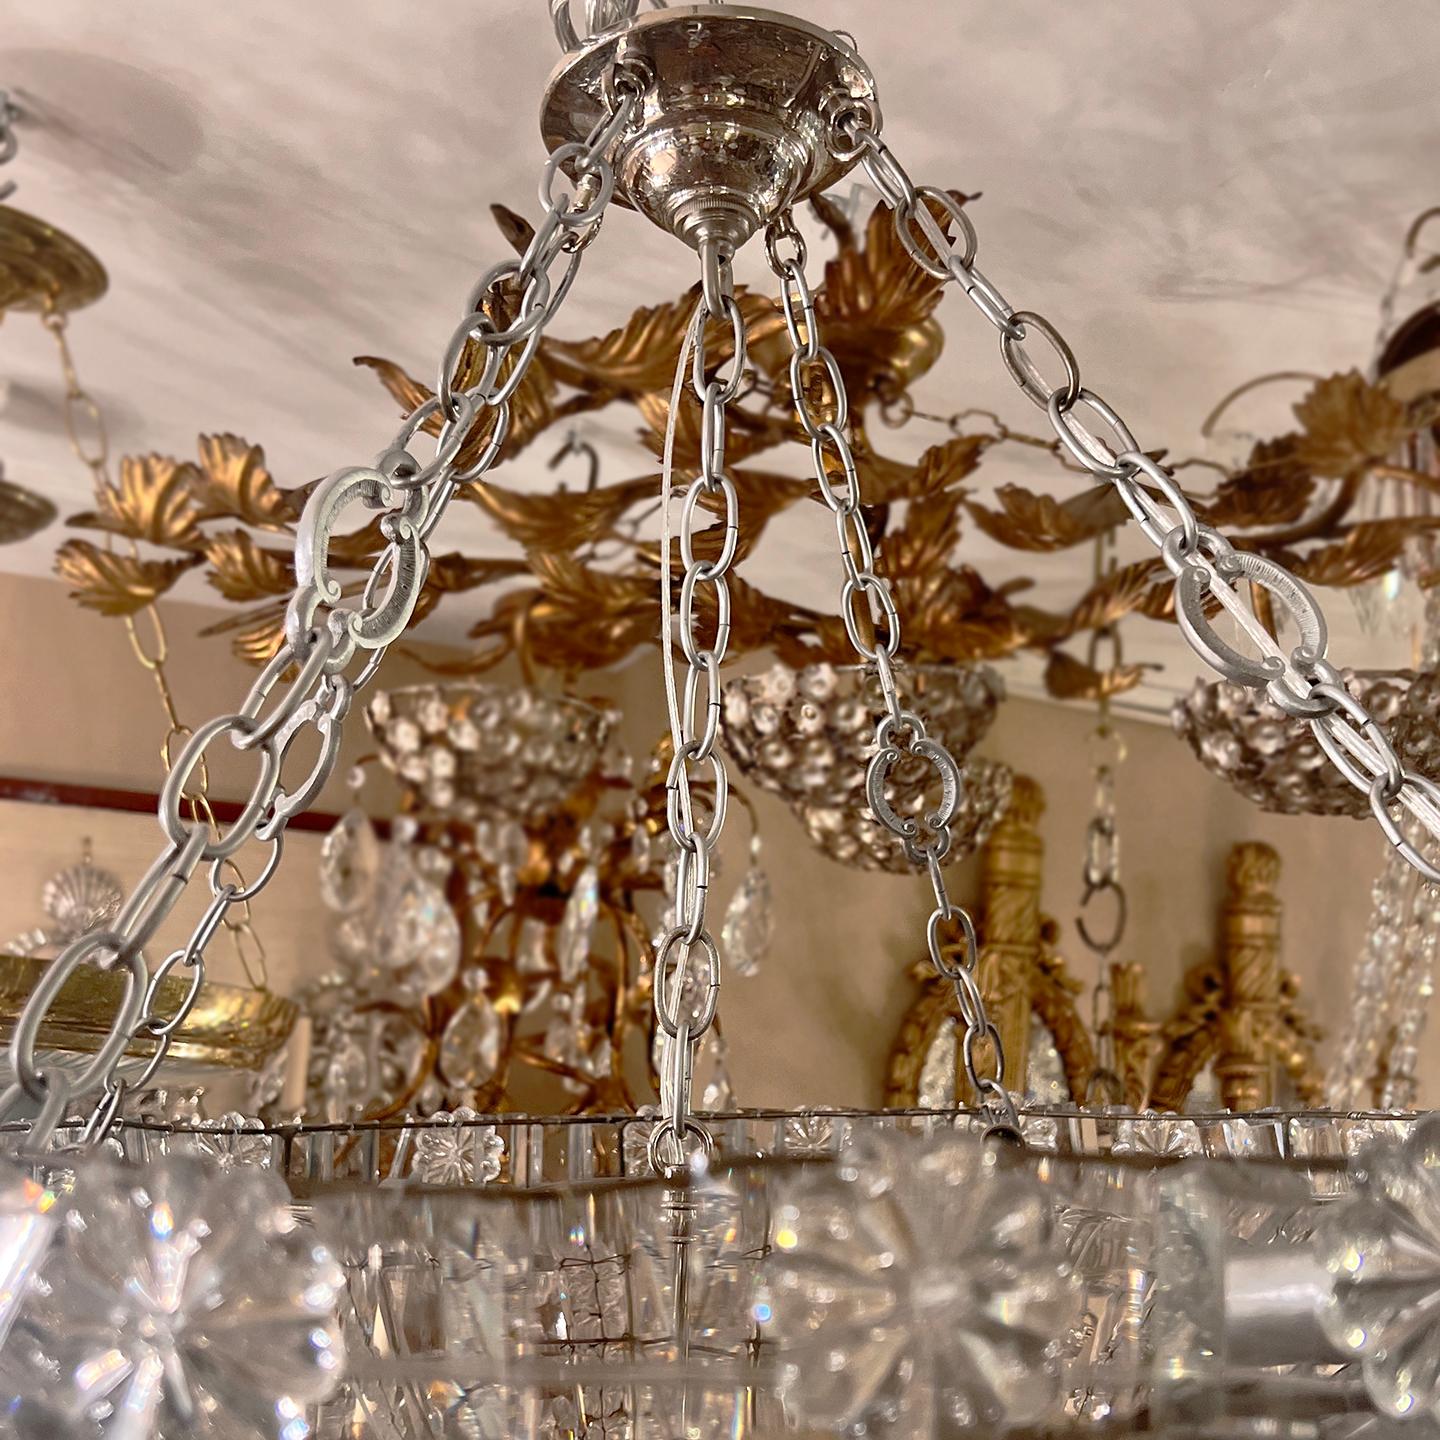 Un luminaire en cristal tressé français des années 1900 avec 12 lampes candélabres à l'intérieur.

Mesures :
Hauteur de la présentation : 30